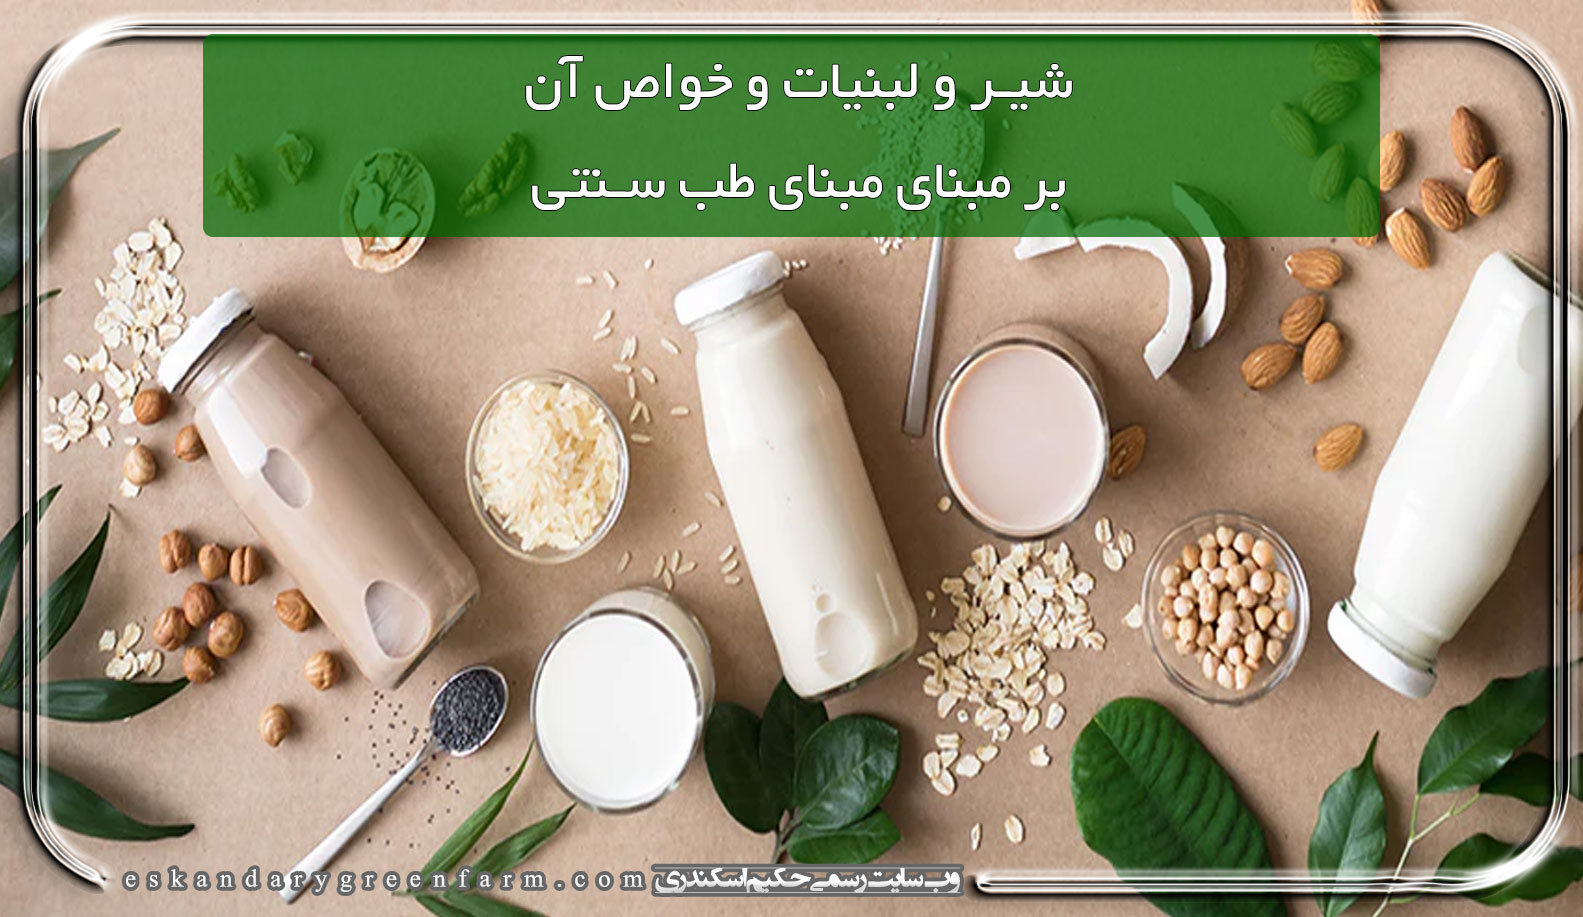 شیر و لبنیات و خواص آن بر مبنای طب اسلامی و طب ایرانی